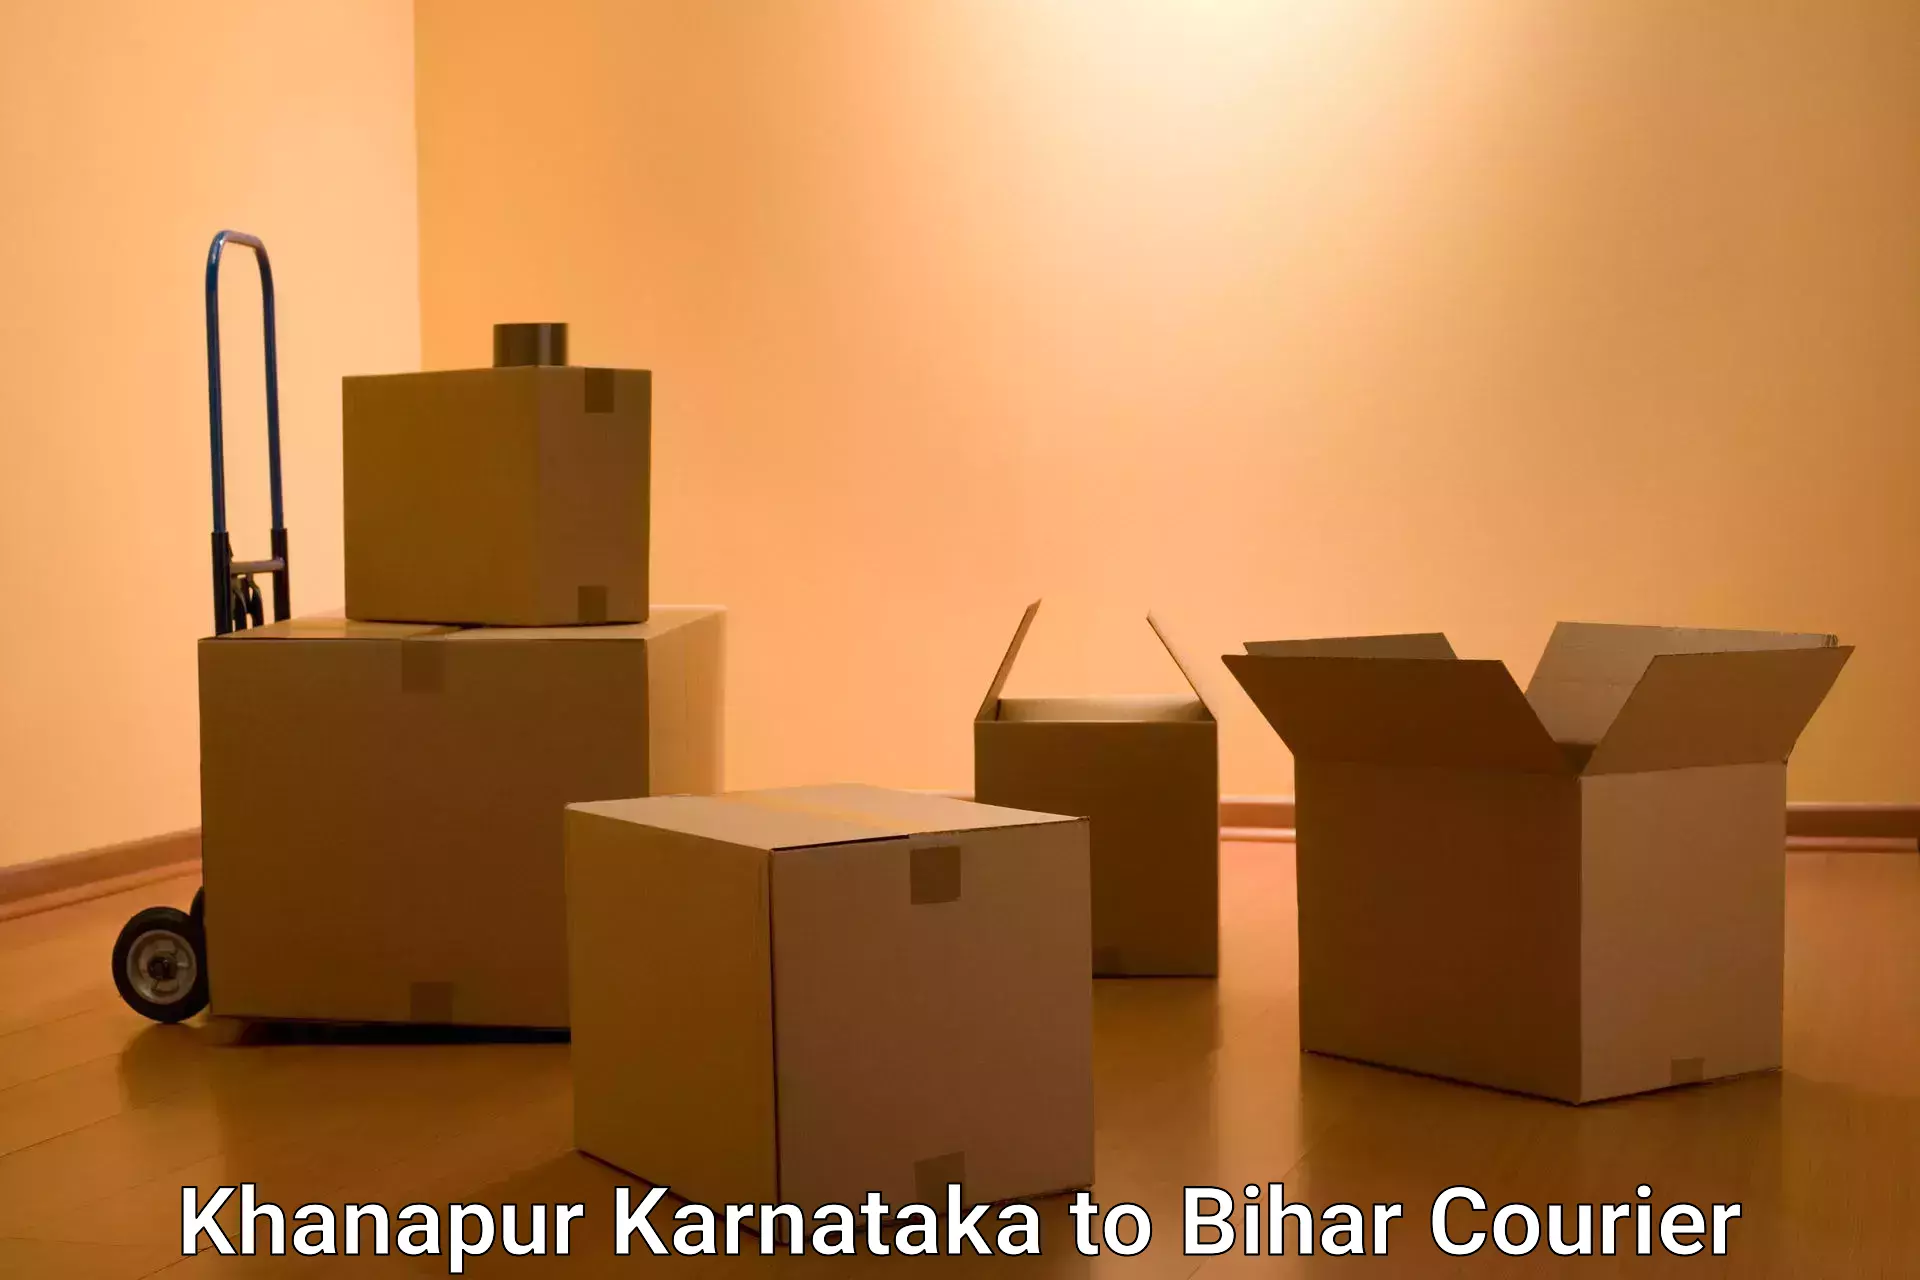 Comprehensive shipping network Khanapur Karnataka to Hazrat Jandaha